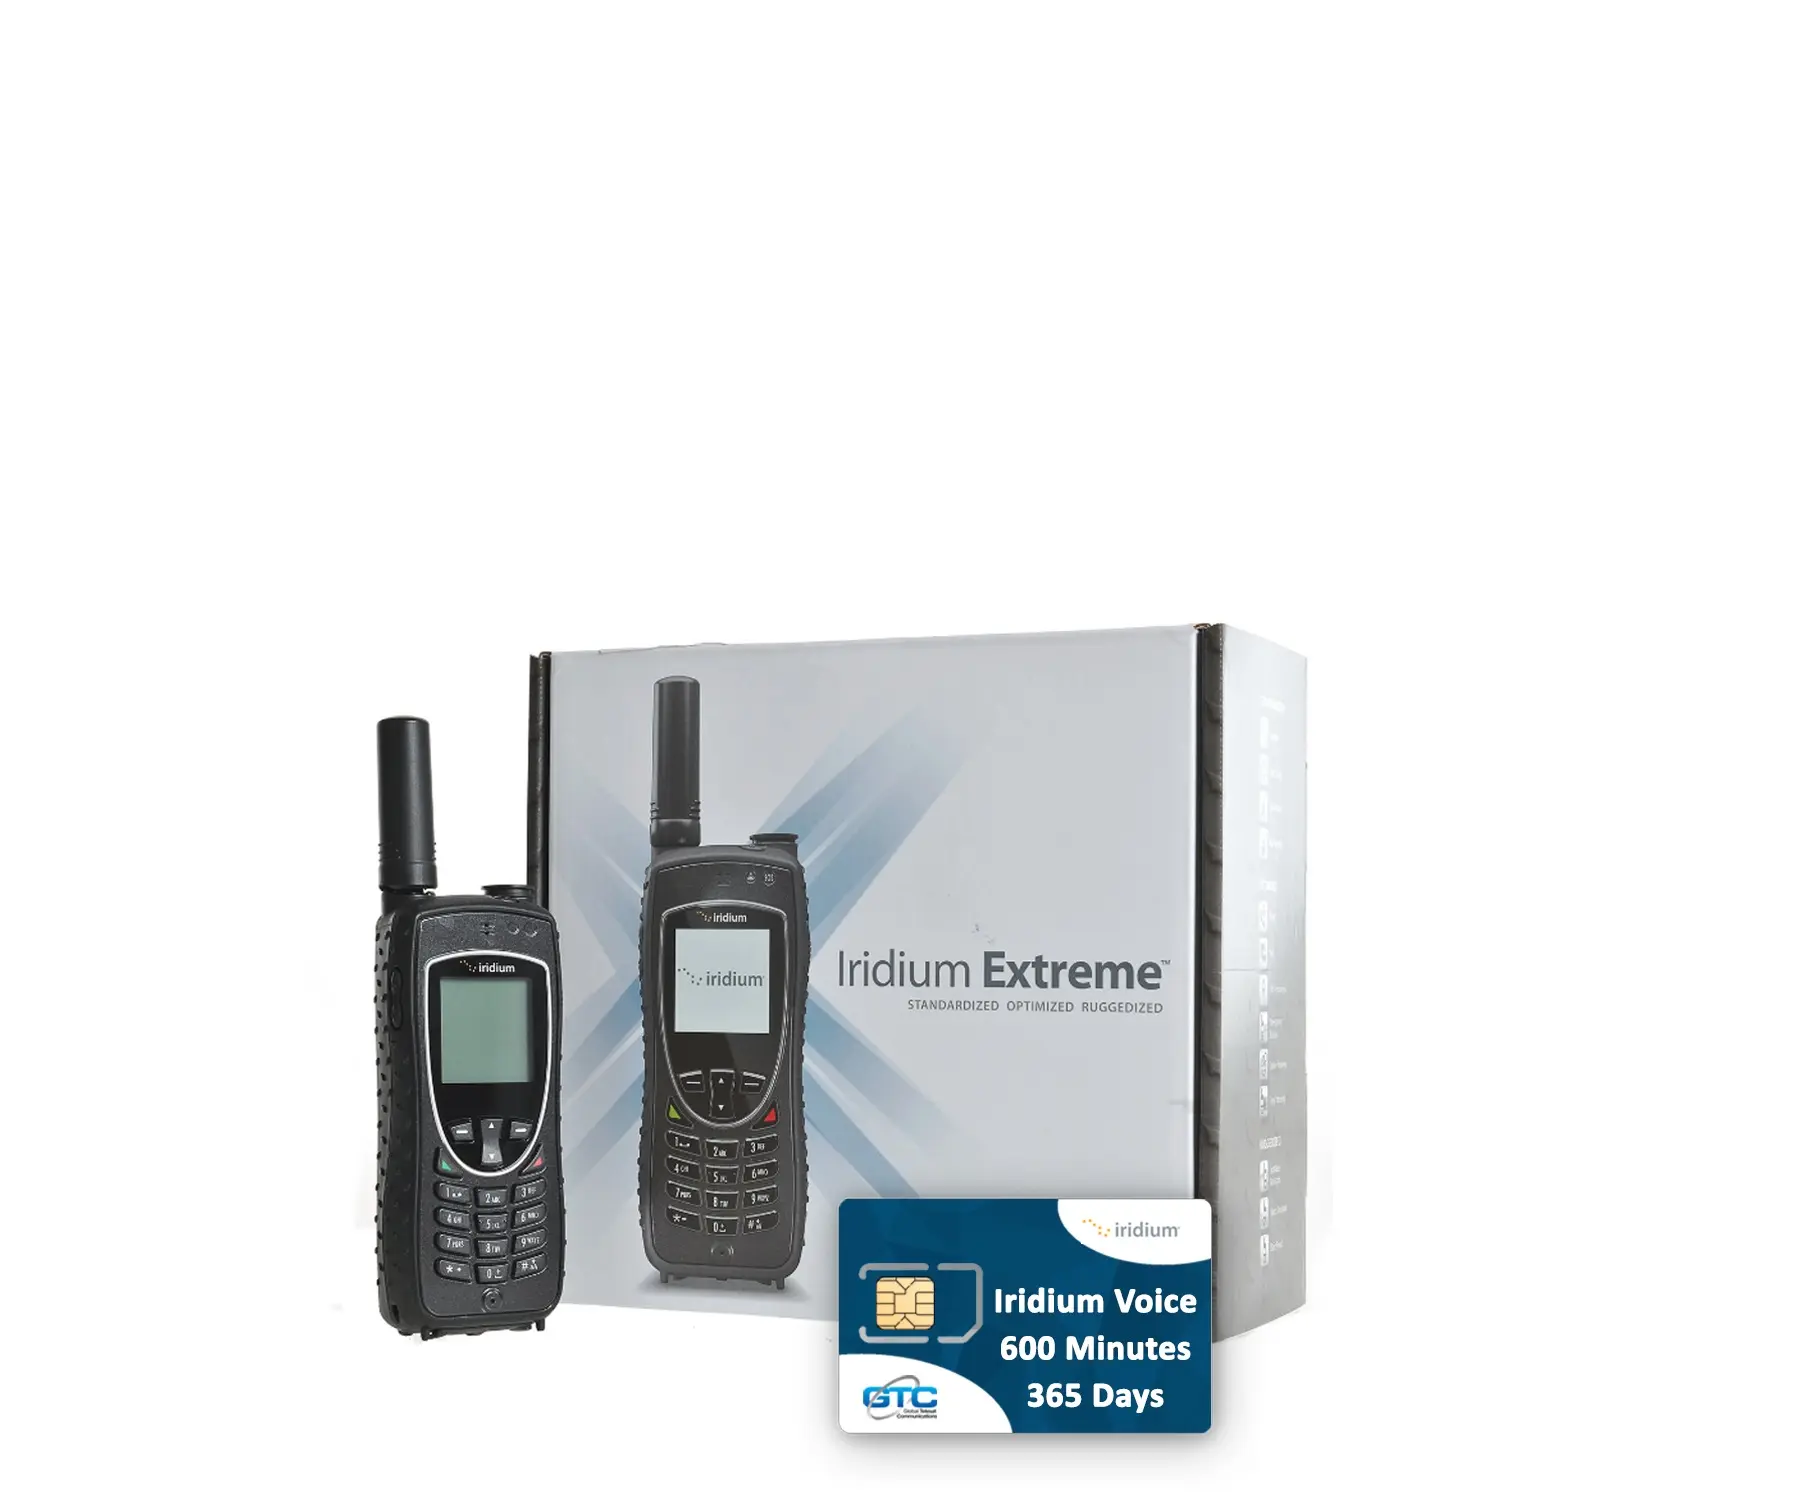 Иридий 9575 Extreme спутниковый телефон с 600 предоплаченными минутами Airtime 365 дней действия